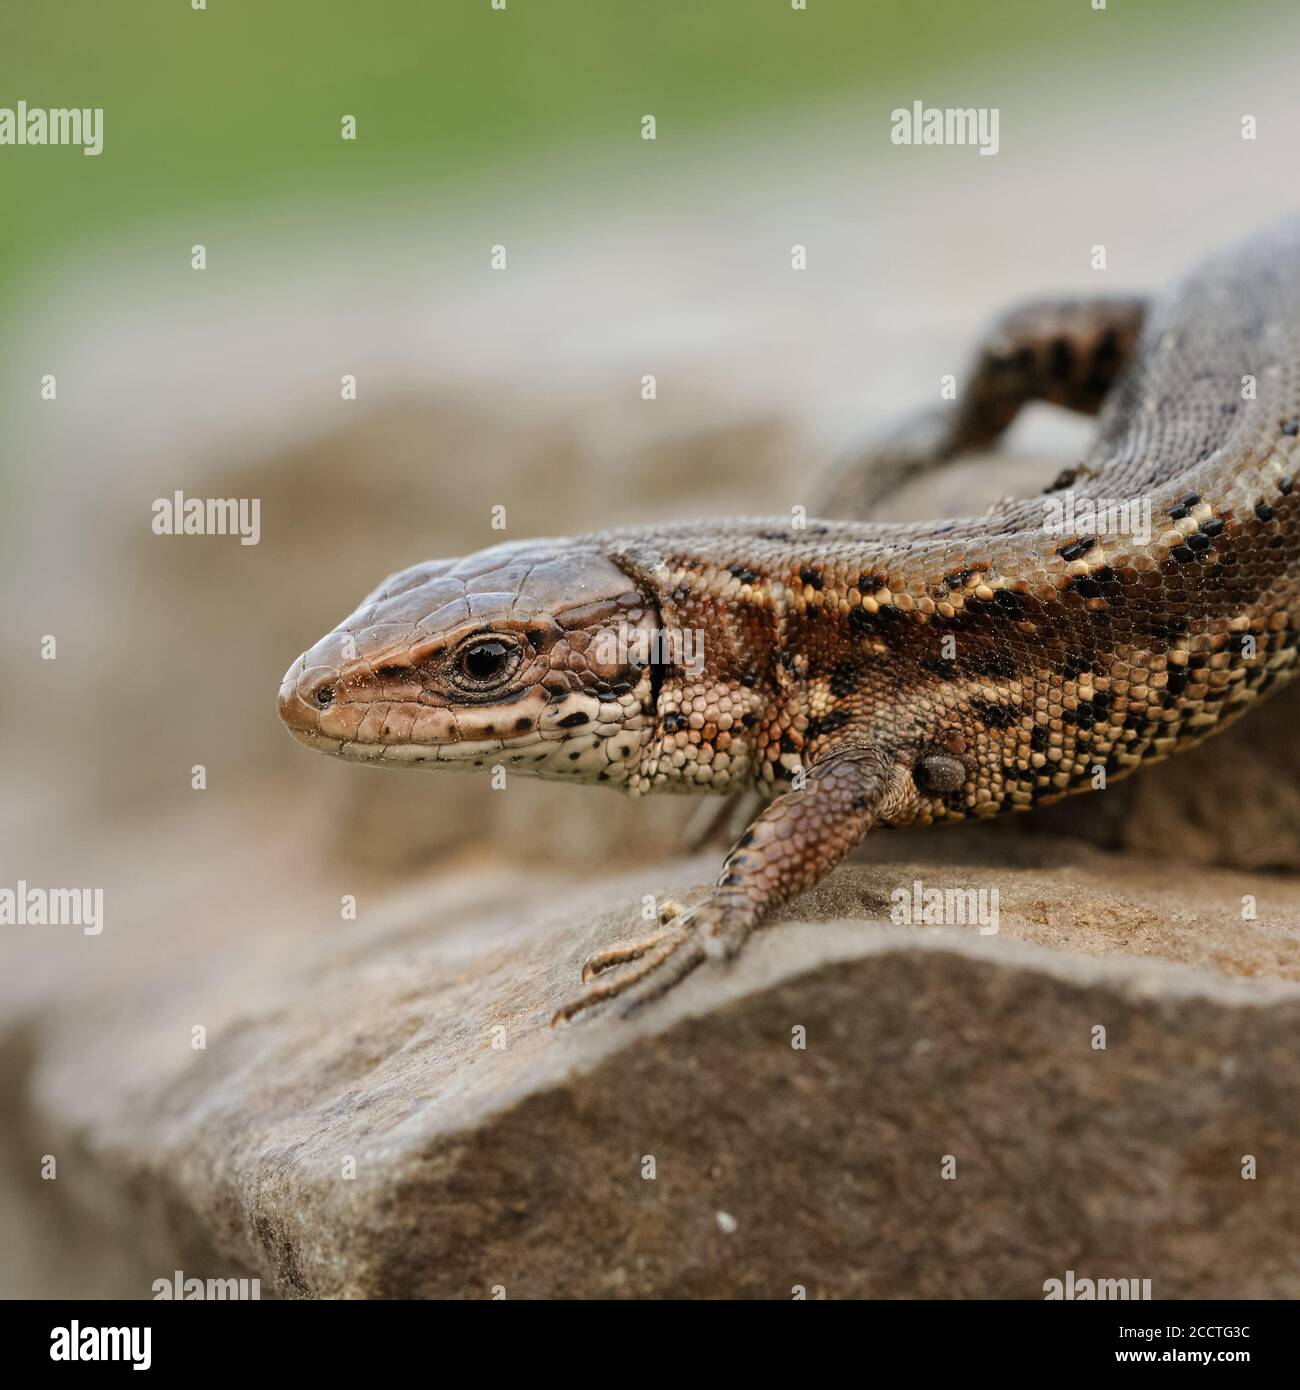 Lizard vivipare ( Zootoca vivipara ), lézard commun, rampant sur les rochers, en cours de réchauffement, tôt au printemps, belle vue détaillée, faune, Europe. Banque D'Images